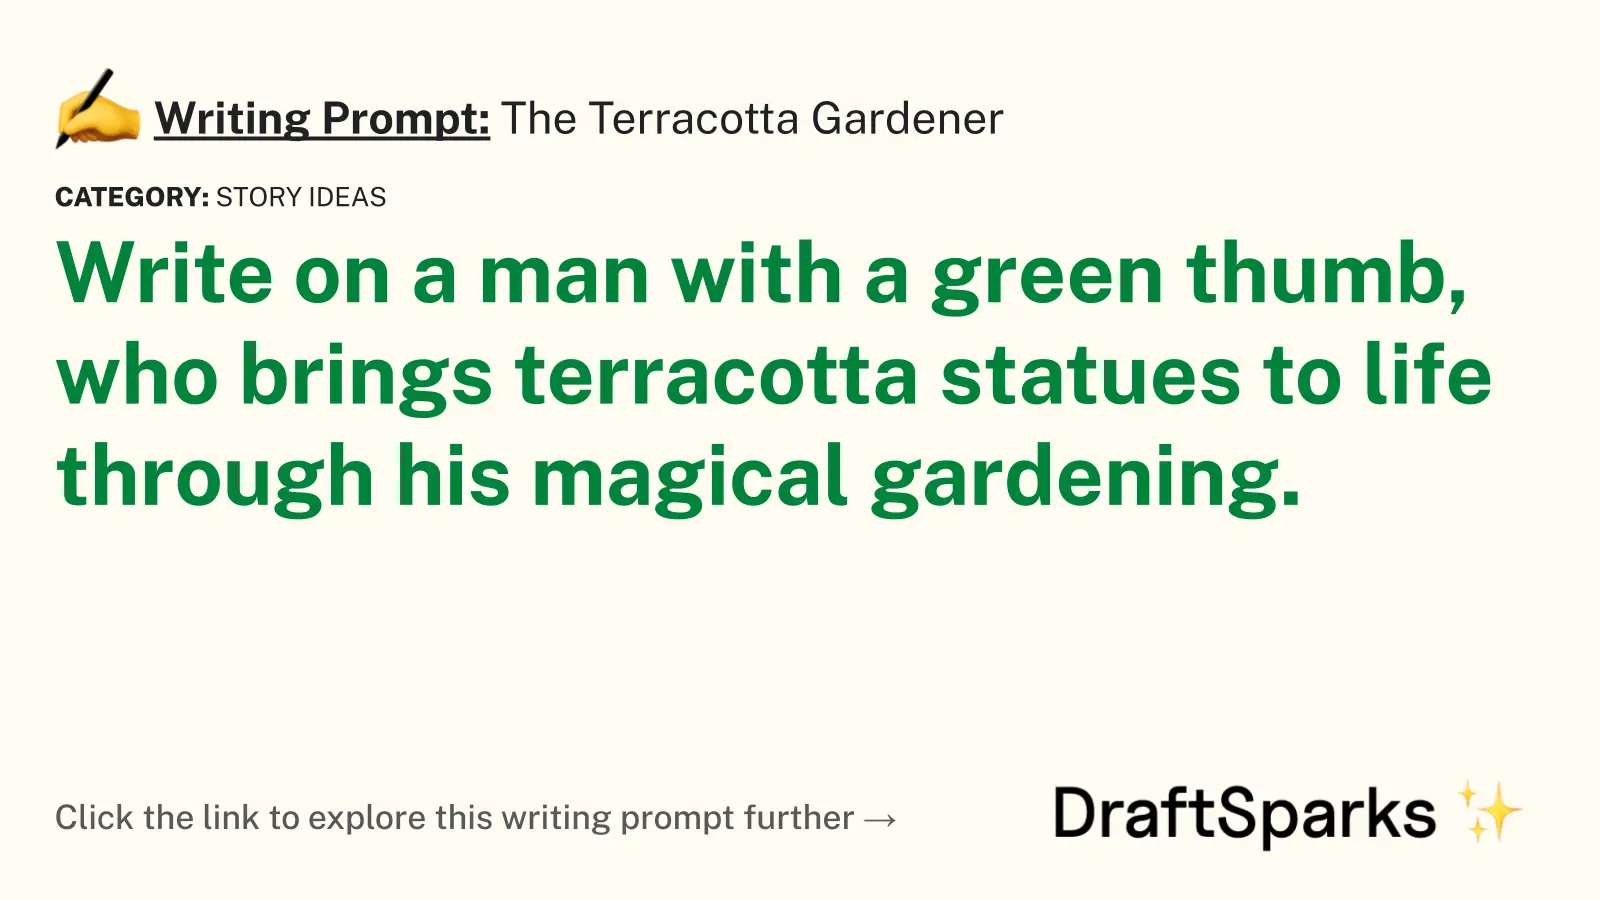 The Terracotta Gardener